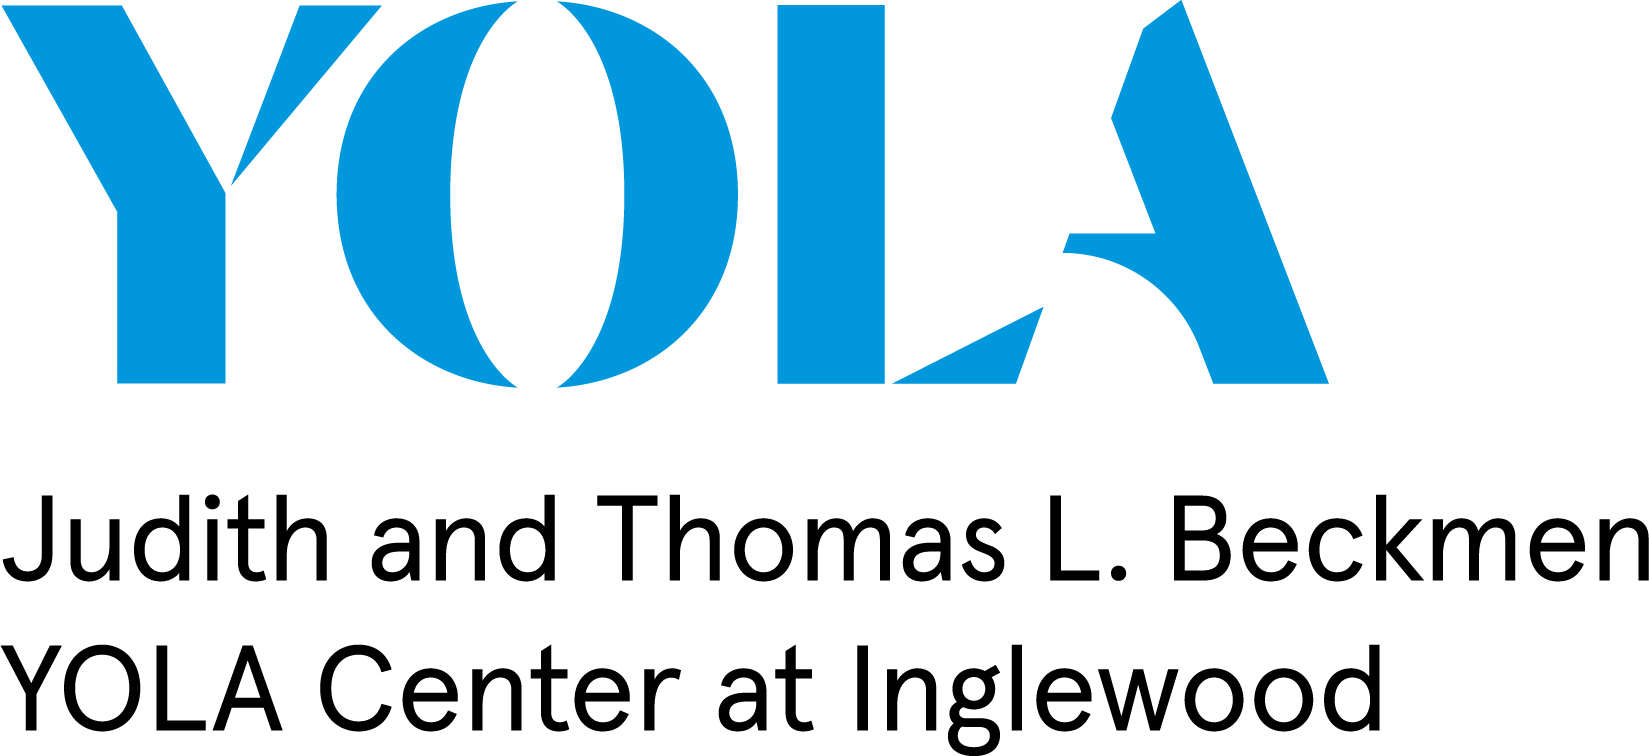 Yola Logo - YOLA Center at Inglewood Press Kit